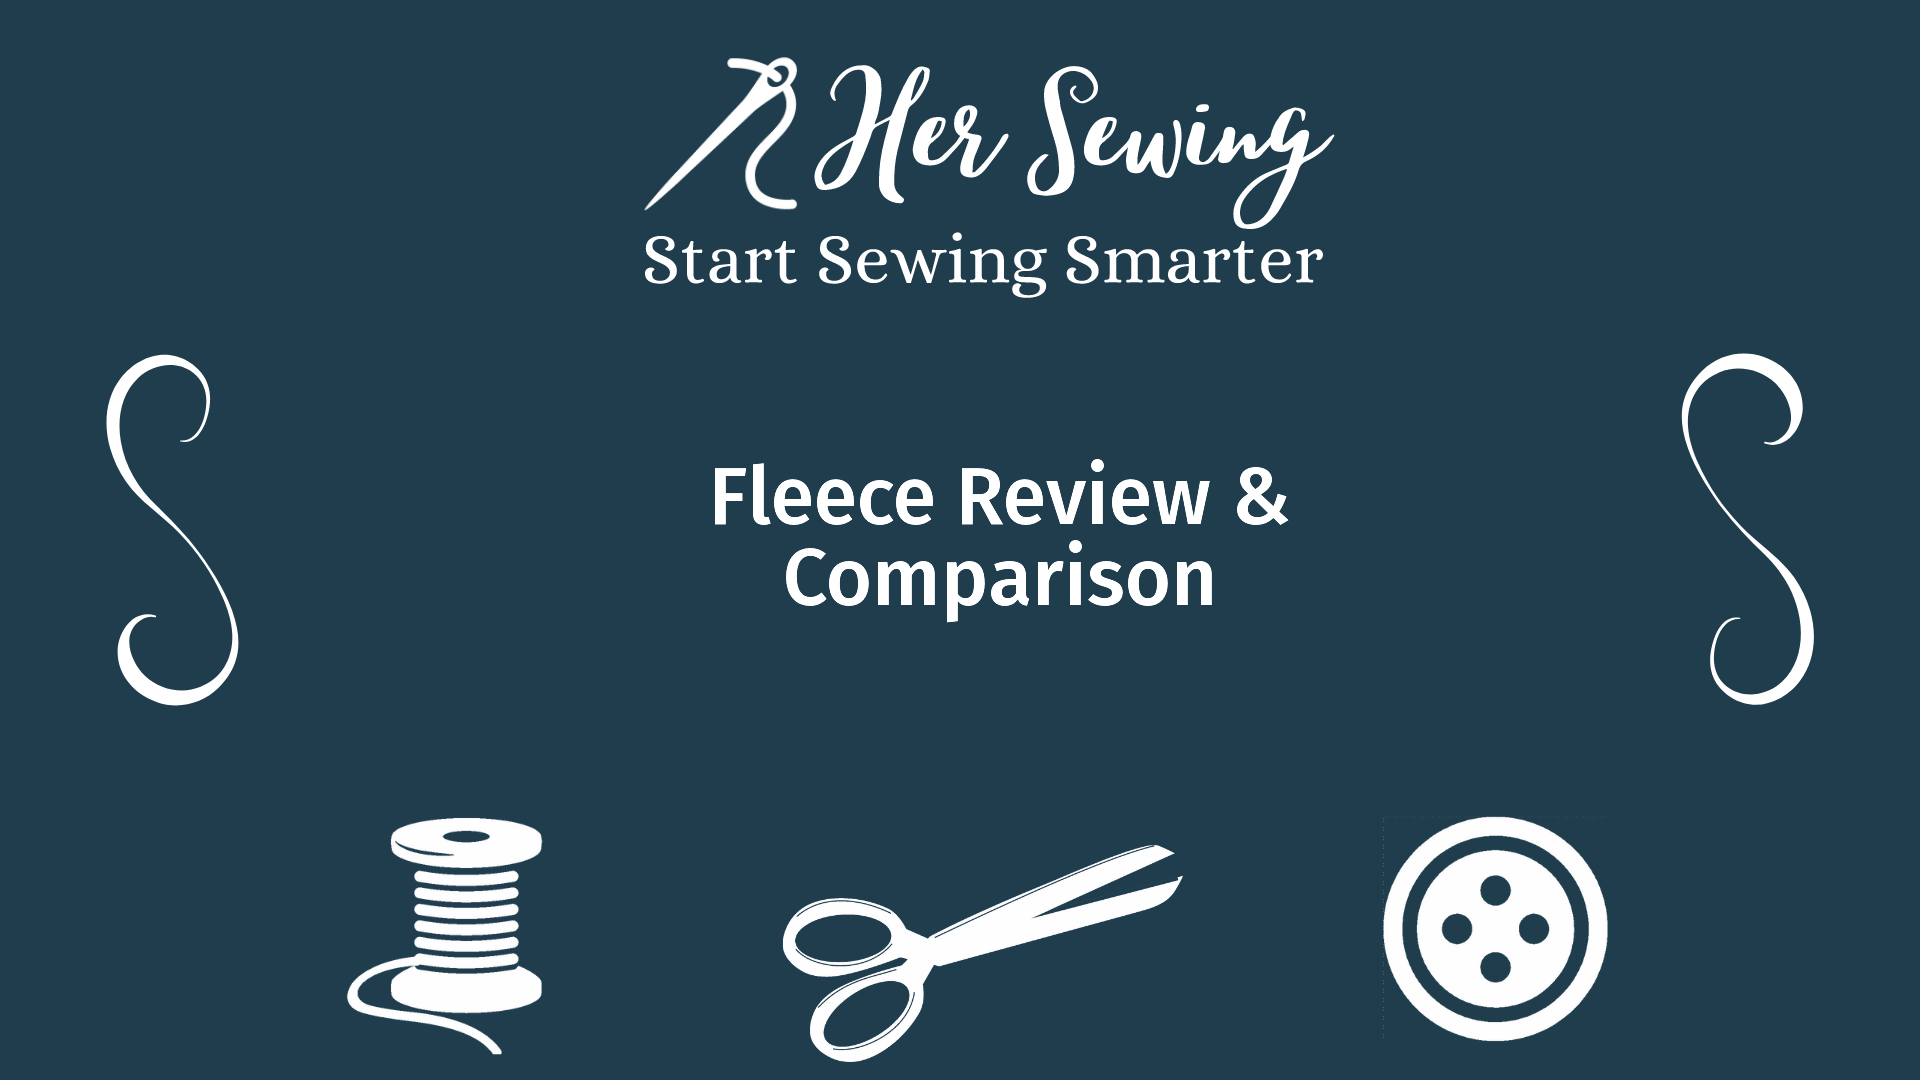 Fleece Review & Comparison